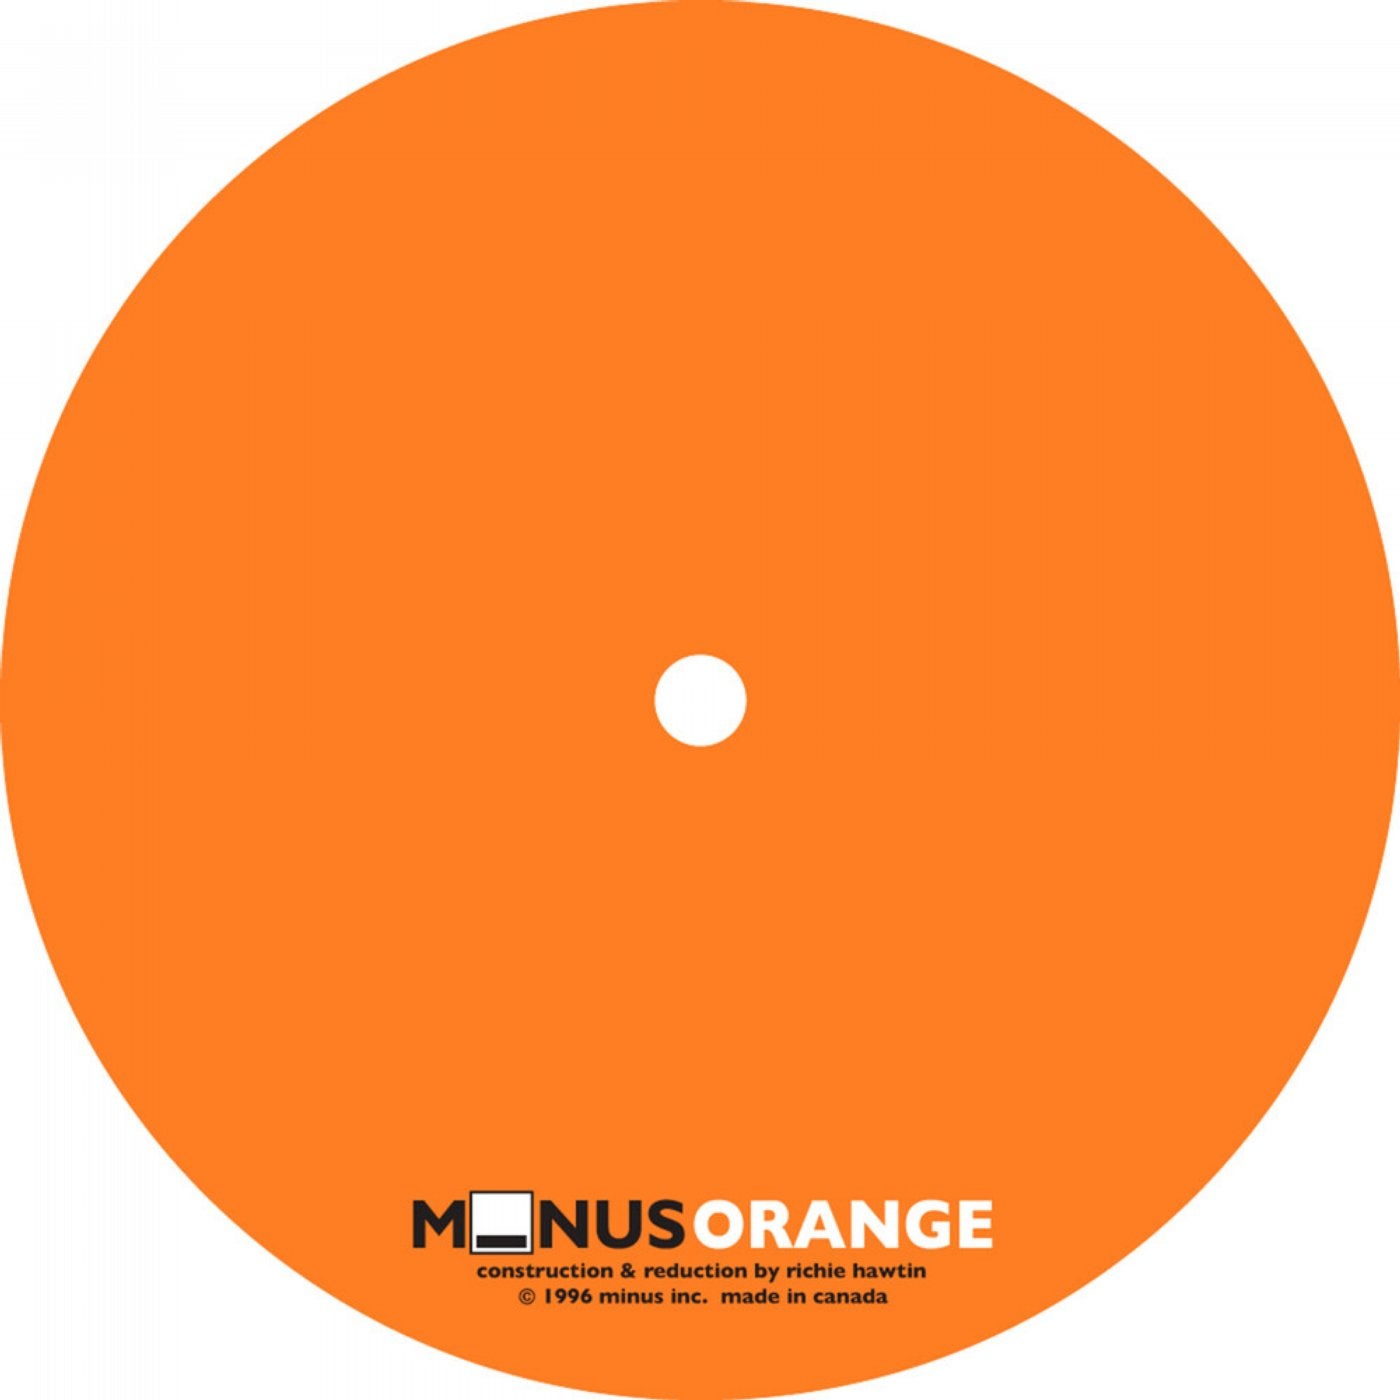 Minus Orange